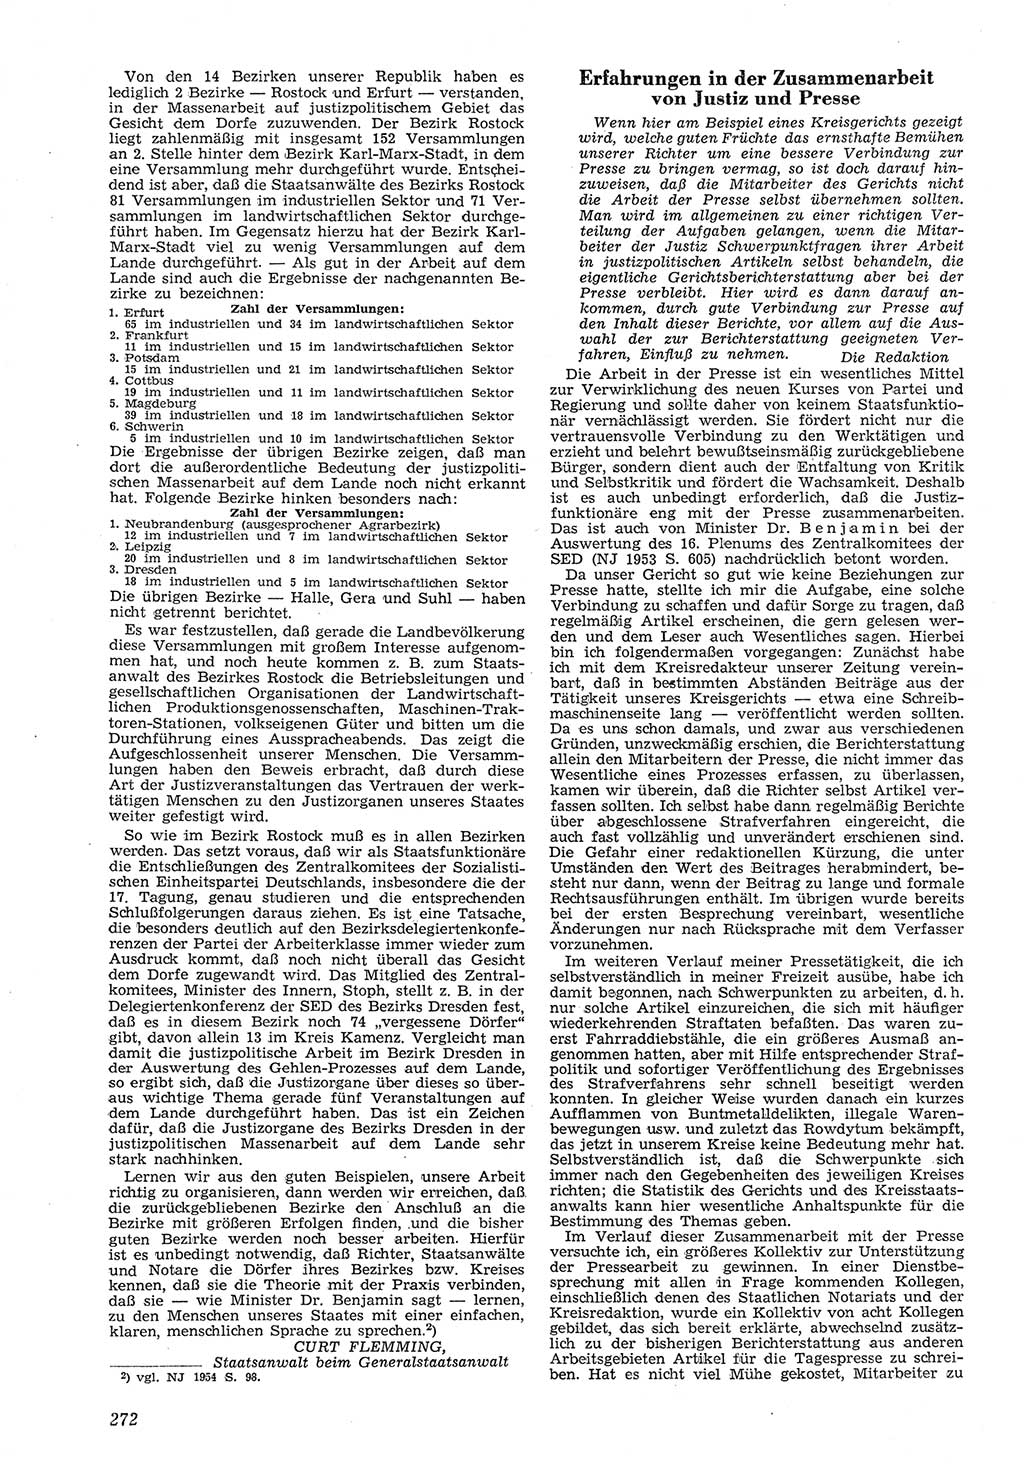 Neue Justiz (NJ), Zeitschrift für Recht und Rechtswissenschaft [Deutsche Demokratische Republik (DDR)], 8. Jahrgang 1954, Seite 272 (NJ DDR 1954, S. 272)